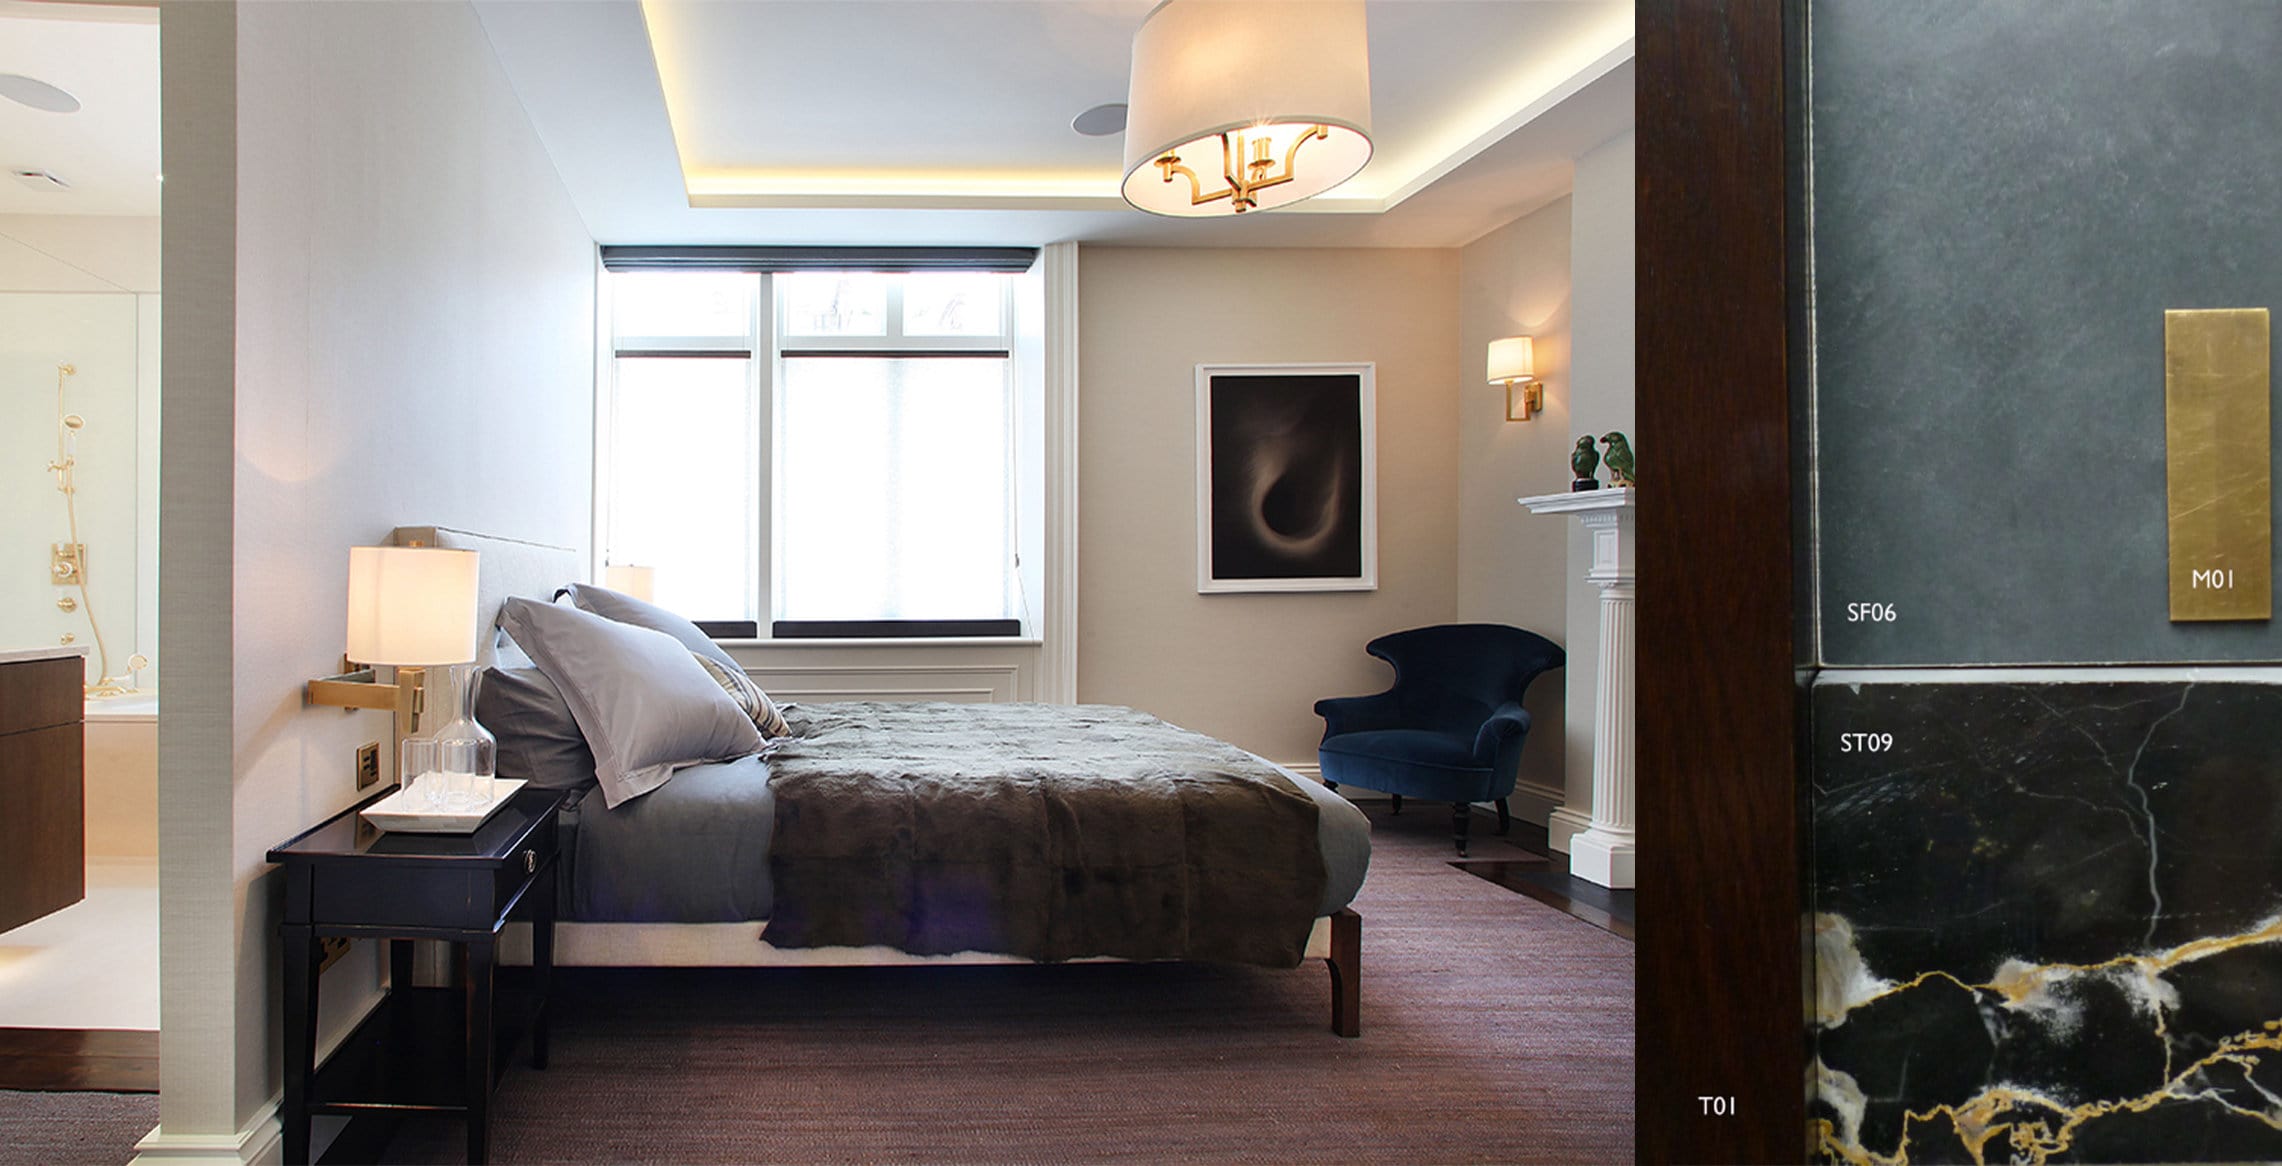 misch_MISCH studio's luxury bedroom interior design